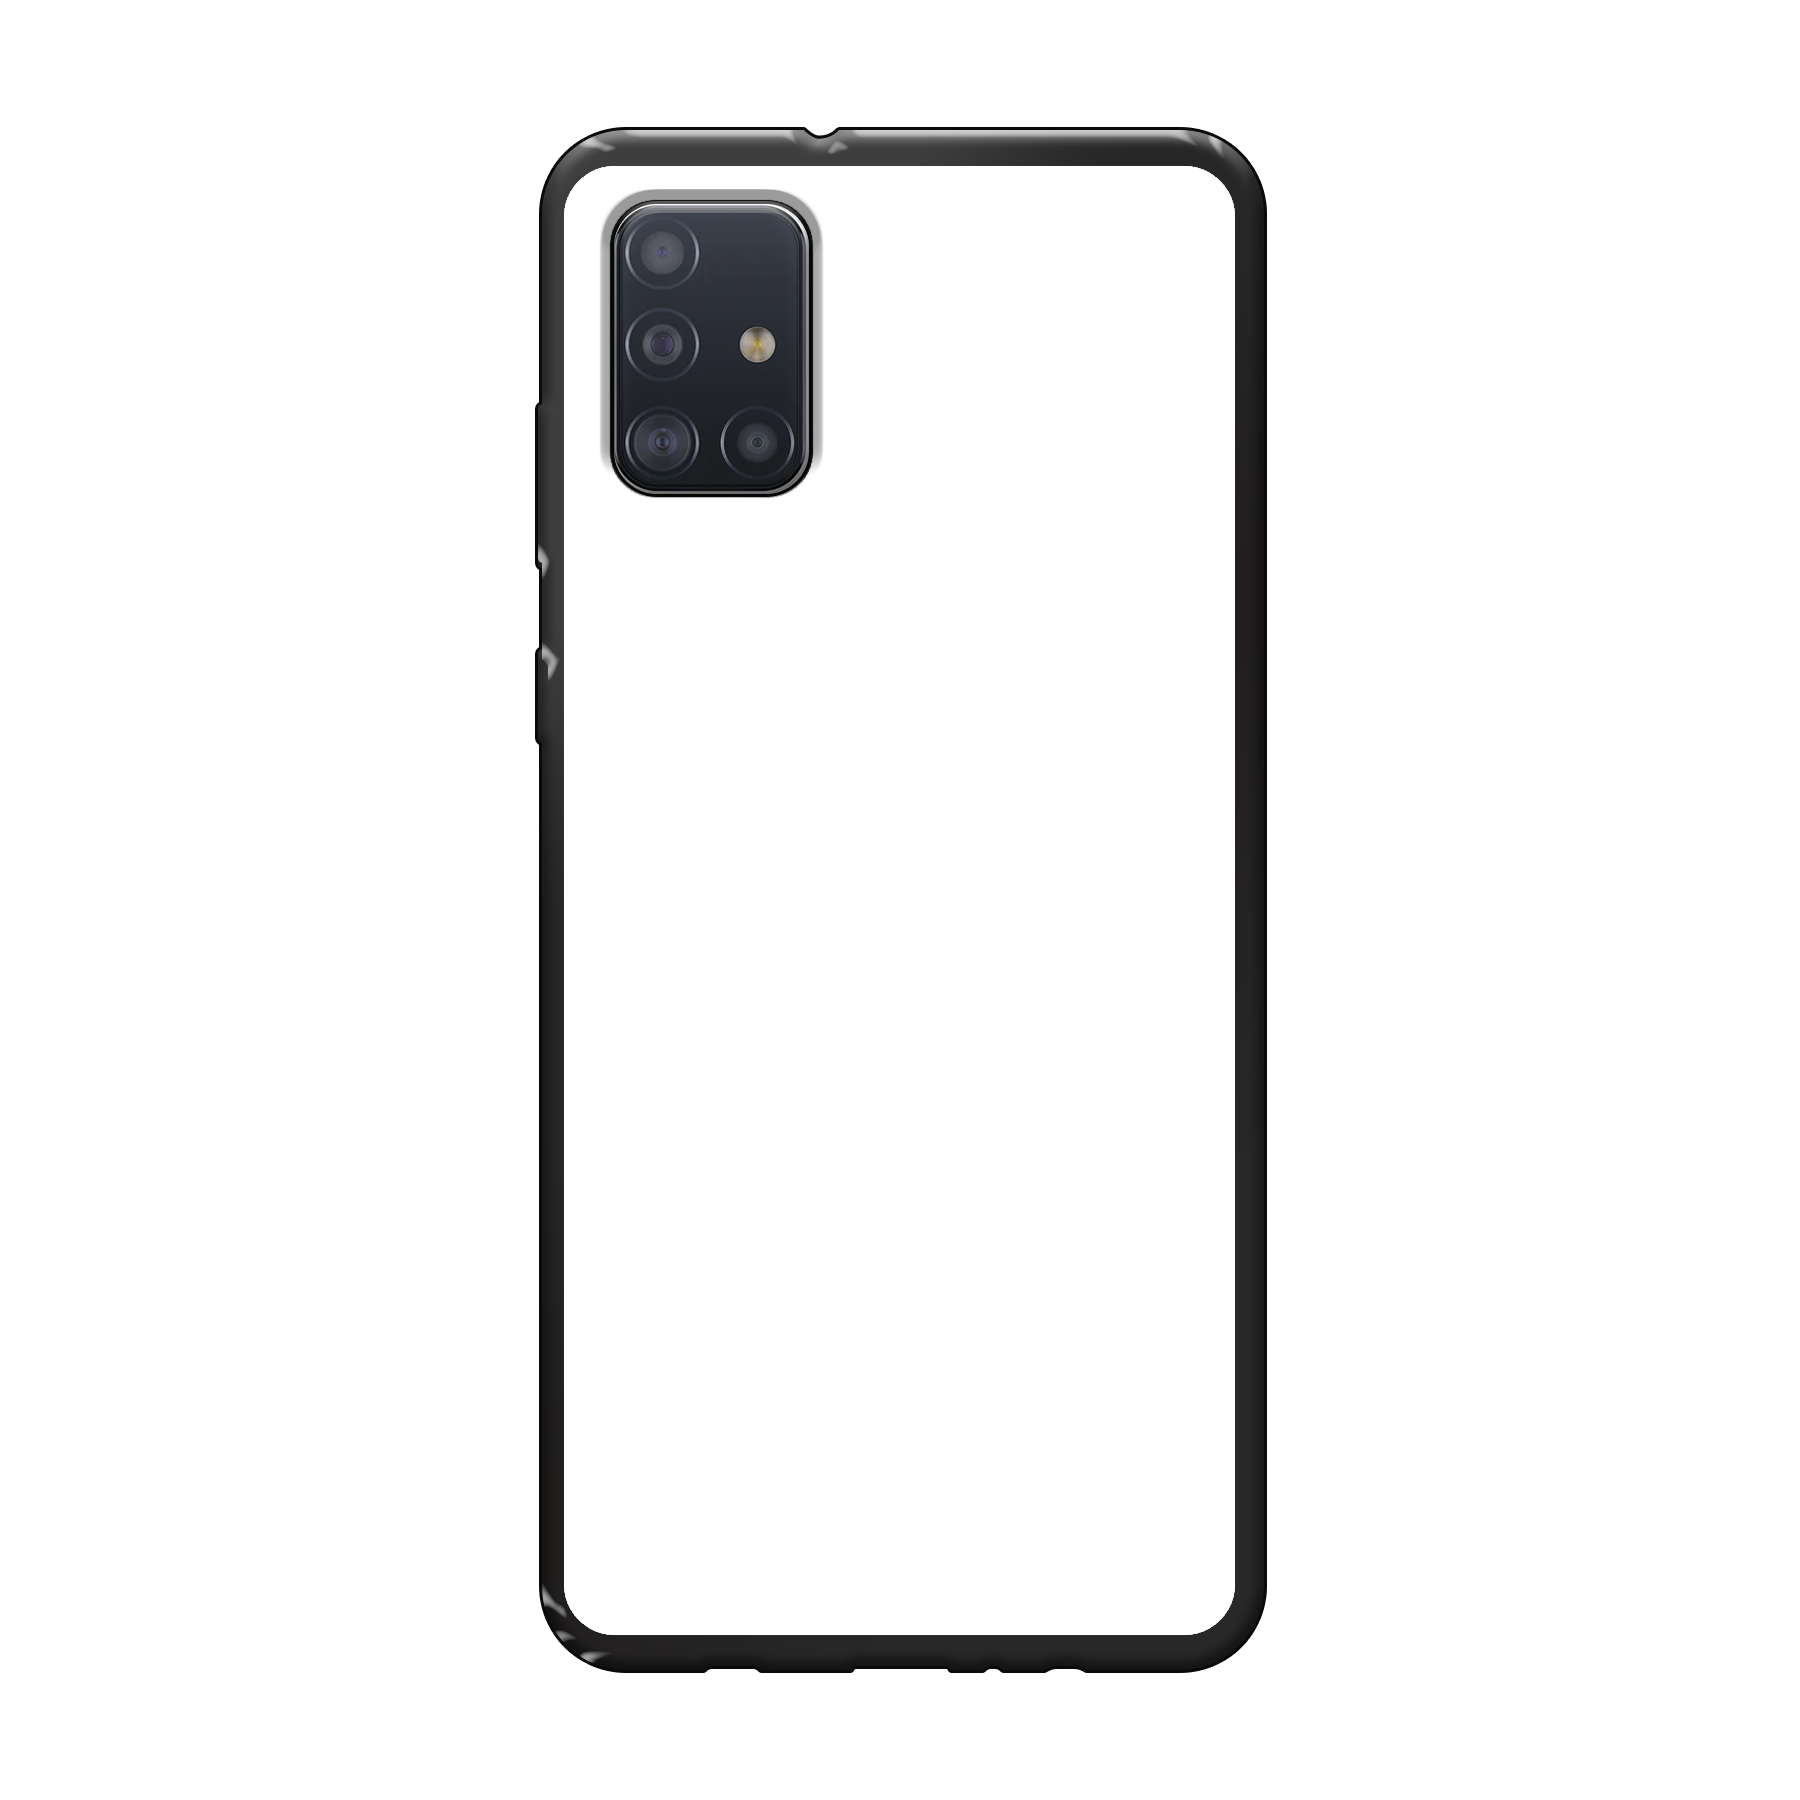 Samsung Galaxy A51 Soft case (back printed, black)